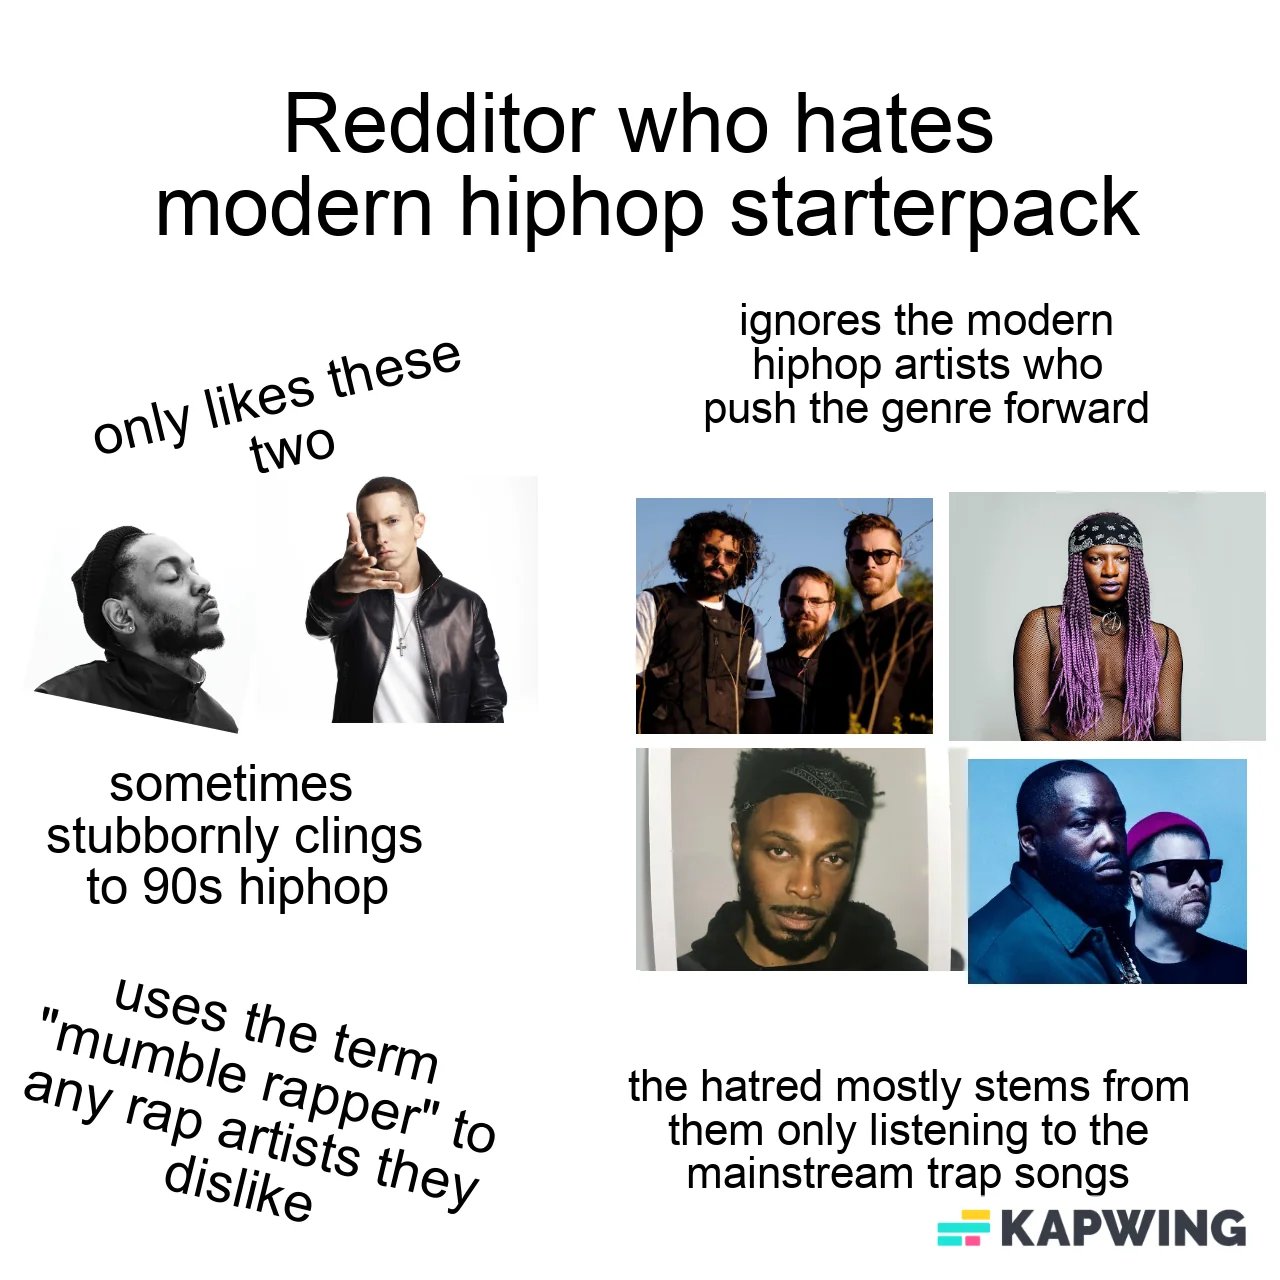 redditor-who-hates-modern-hiphop-starterpack-v0-w8r7qbwgzkzb1.webp